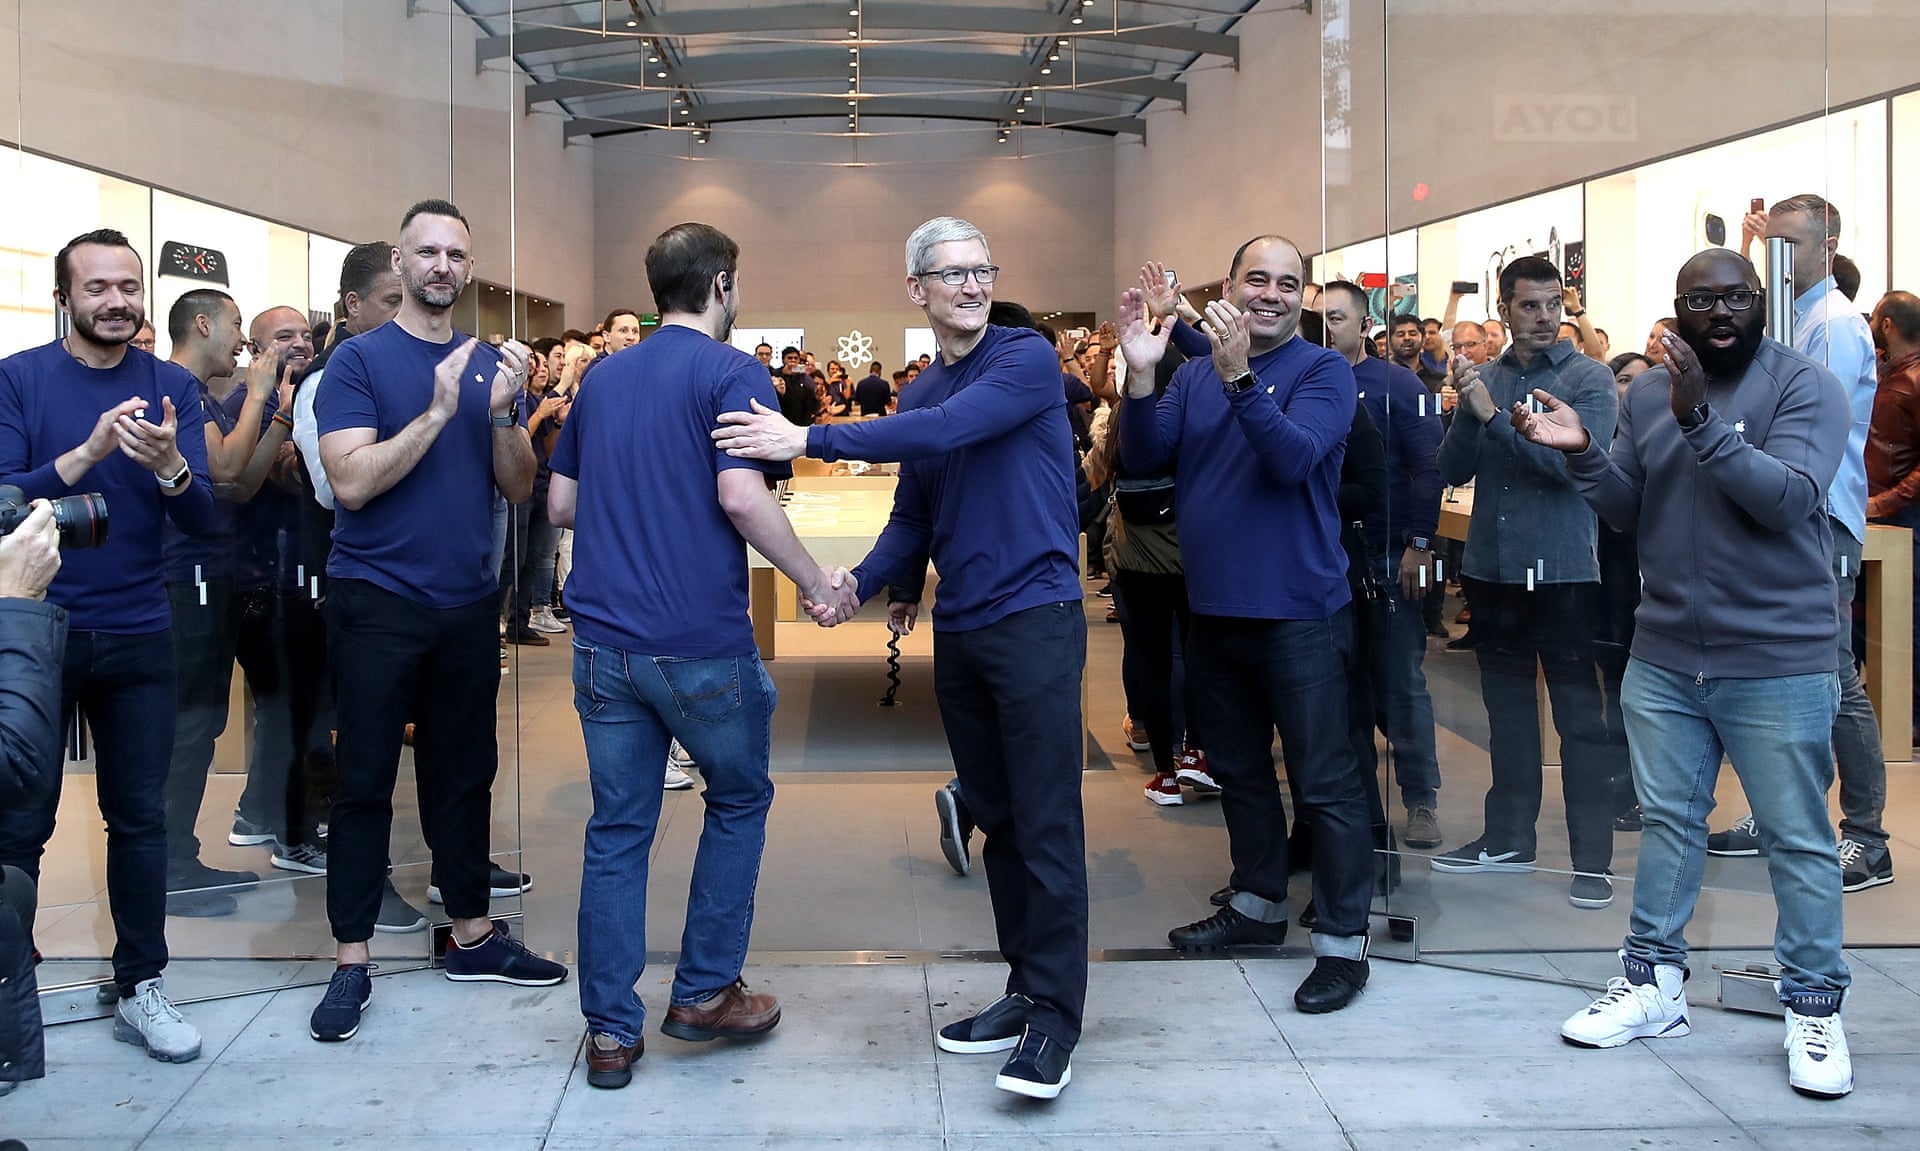 Аплодисменты и одобрительные возгласы: тщательно управляемая драма в магазинах Apple - 2